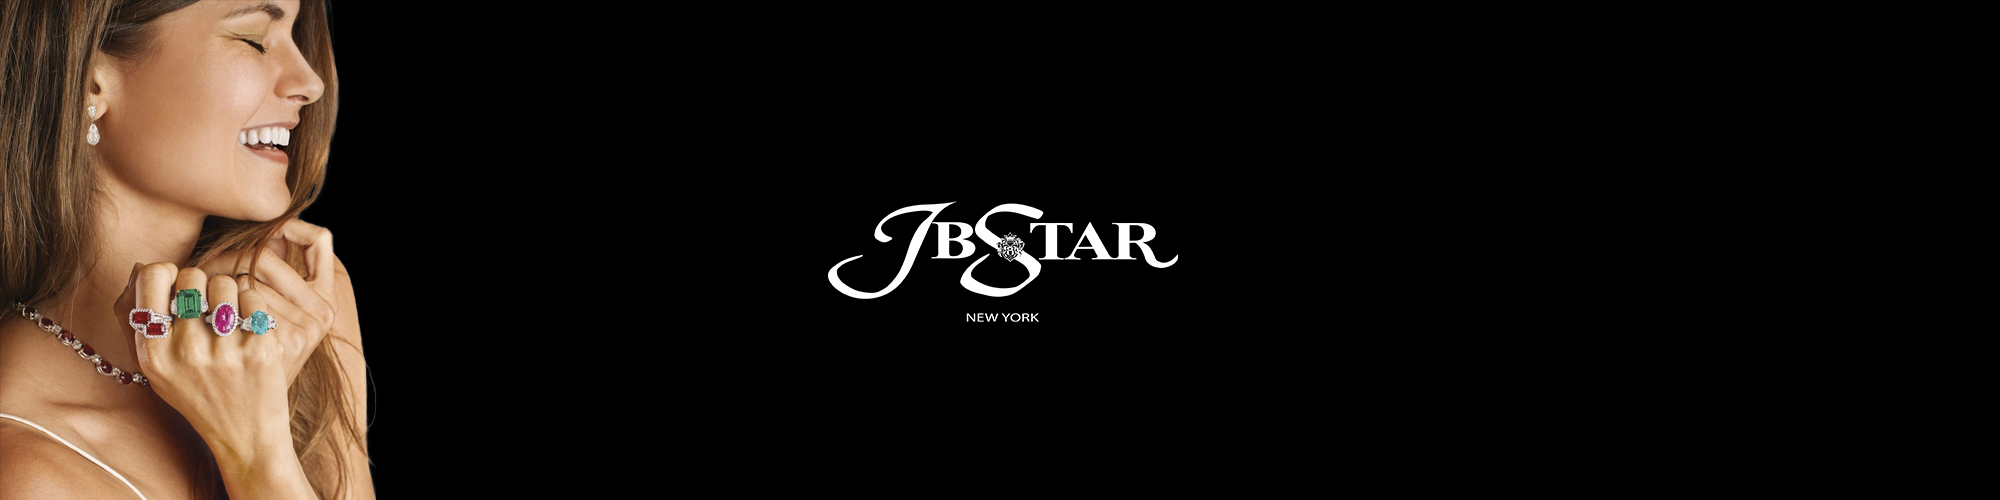 JB Star